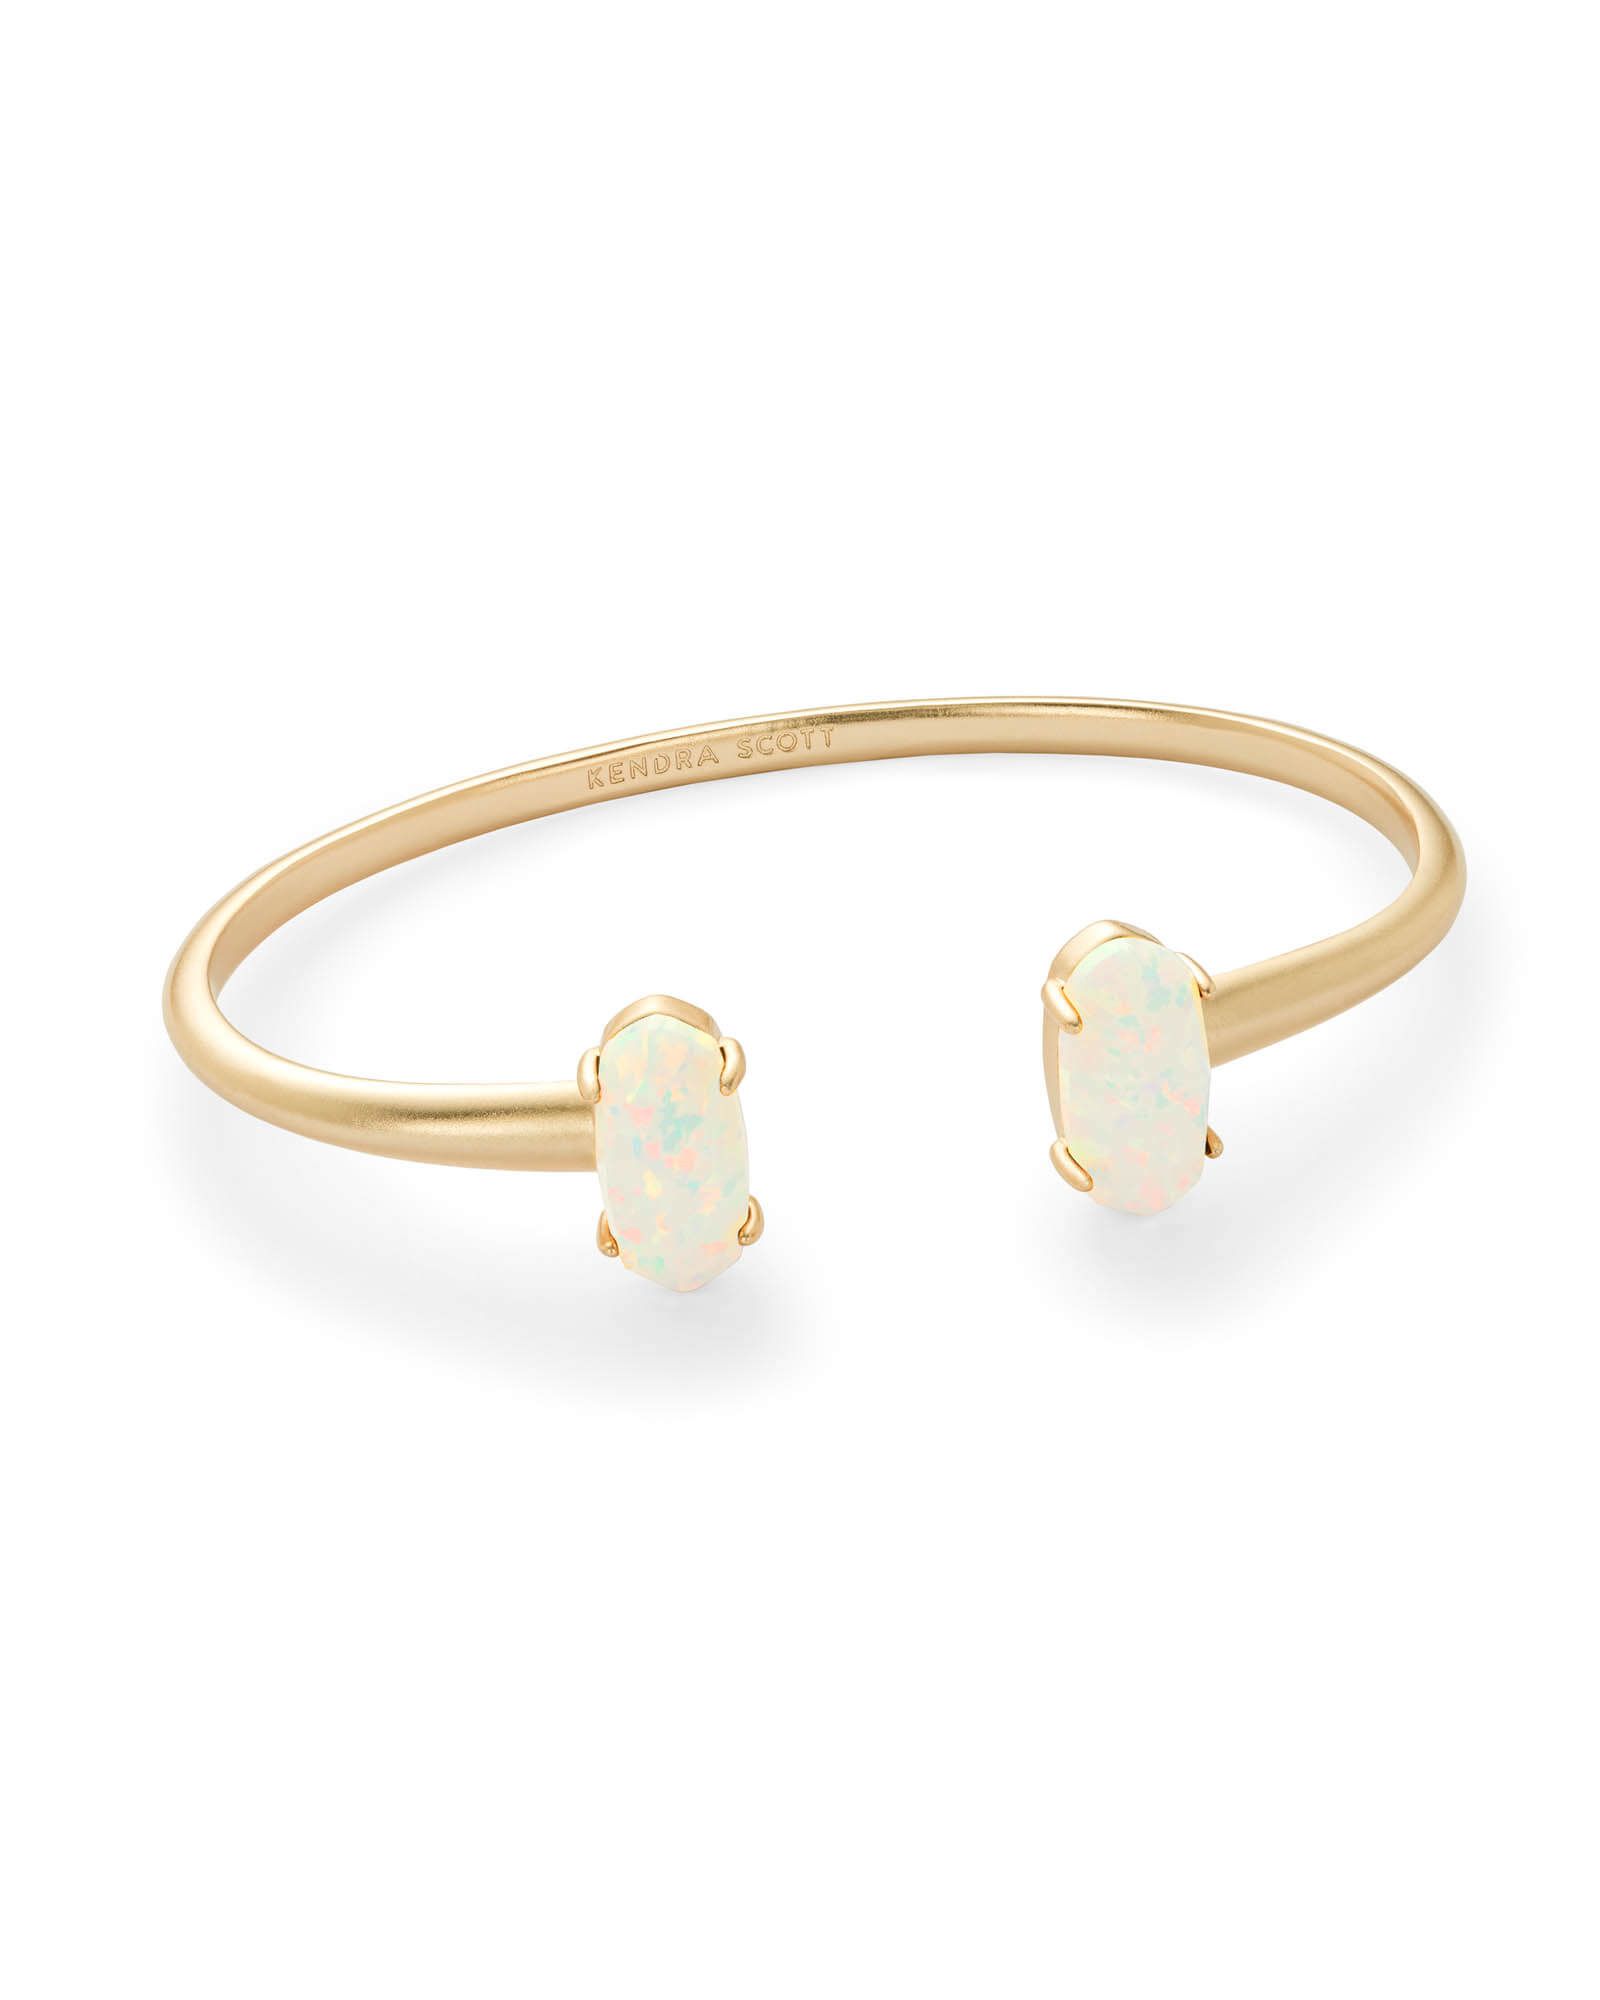 Edie Gold Cuff Bracelet in White Kyocera Opal | Kendra Scott